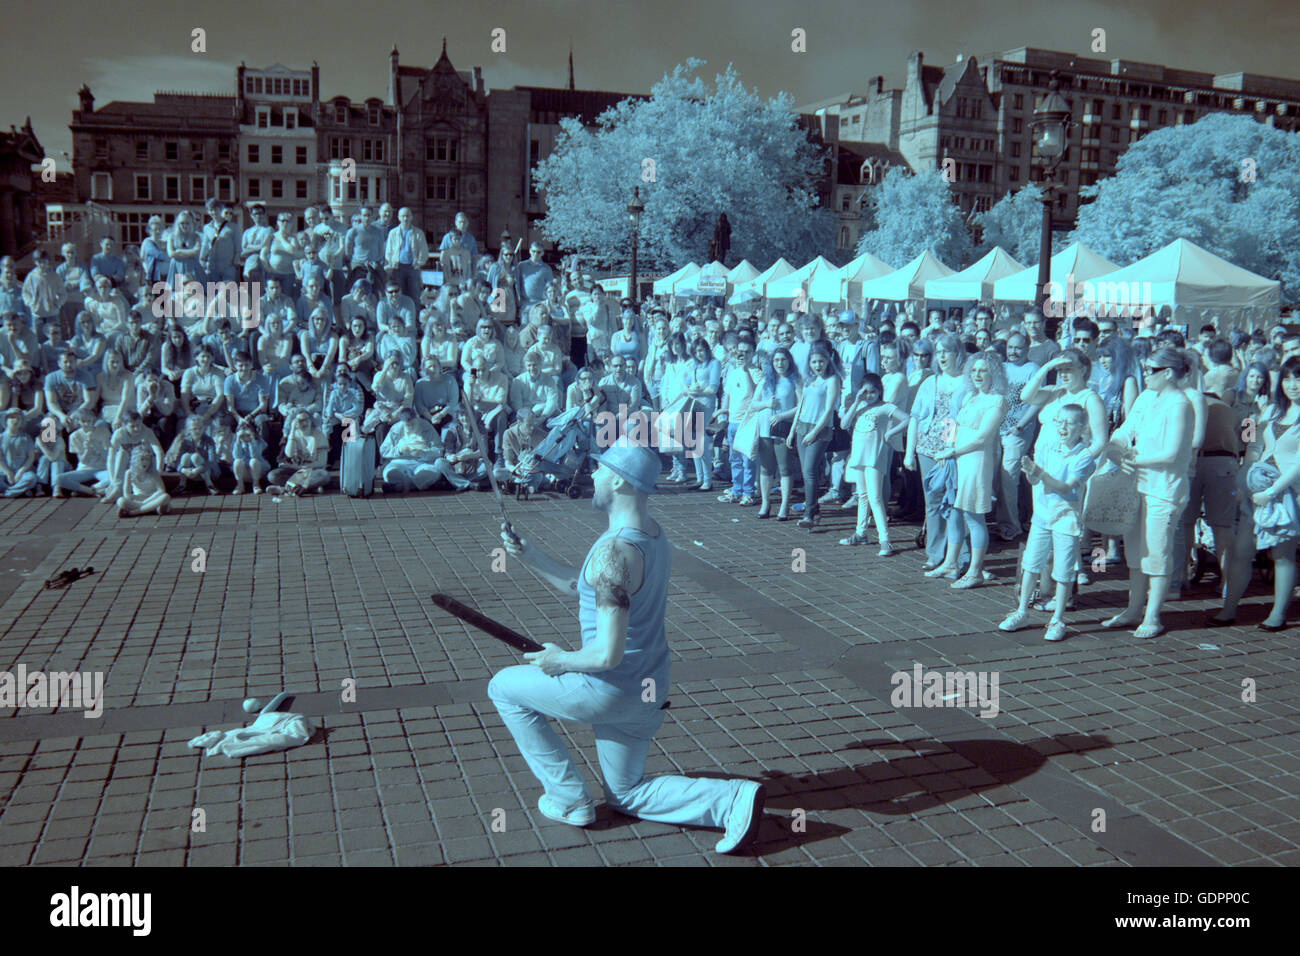 Infra Red-Kamera Szenen Edinburgh Festival Fringe Jungfrau gesponsert Straßenfest Edinburgh, Scotland, UK Stockfoto